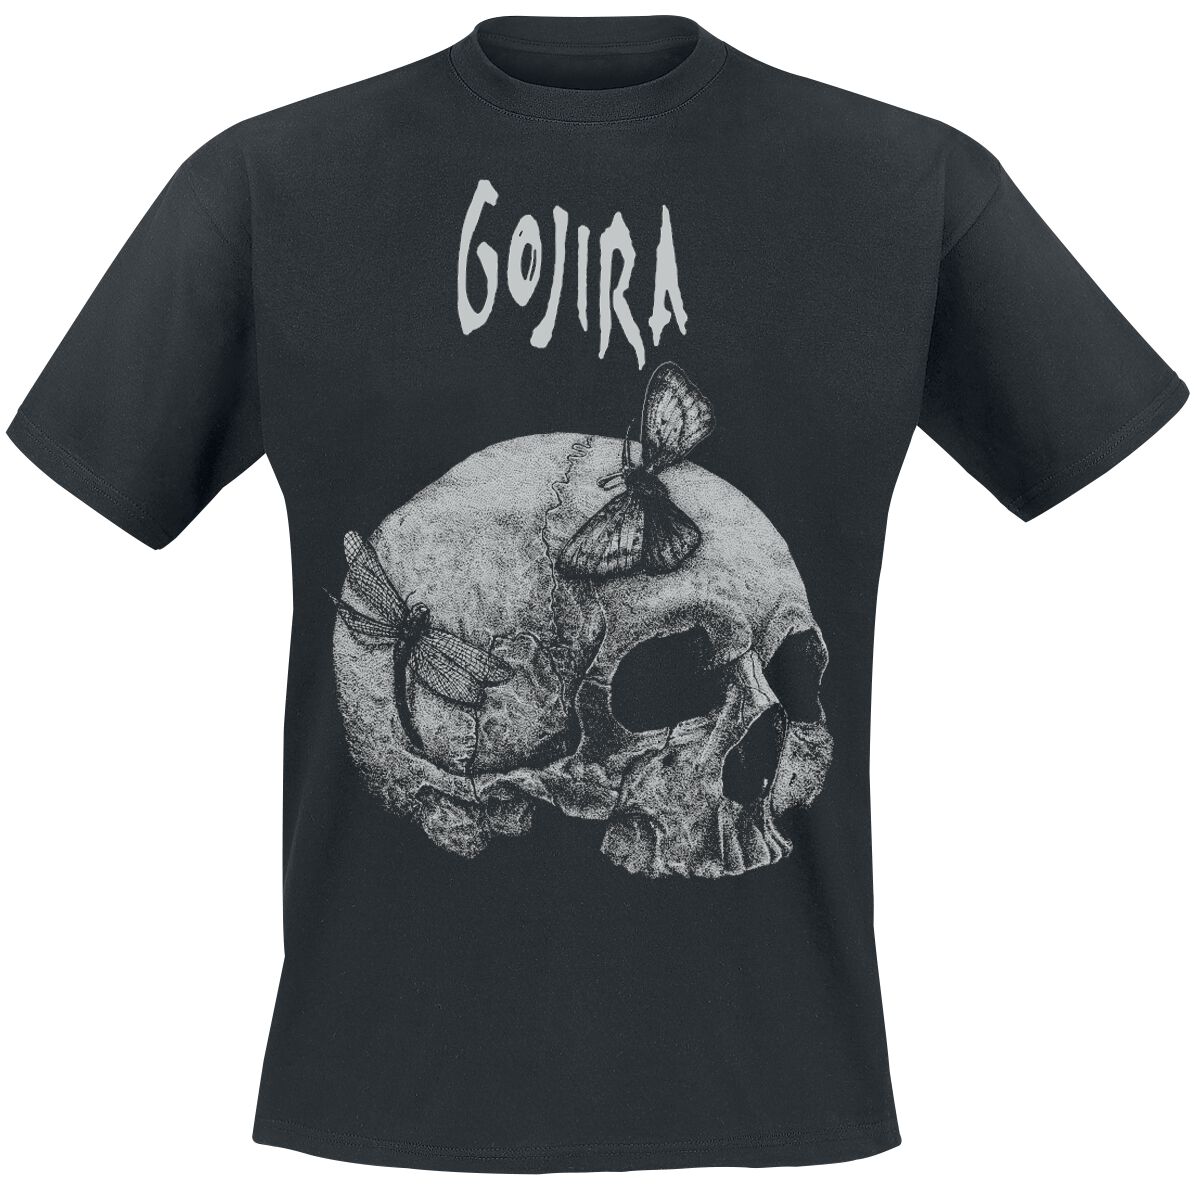 gojira t-shirt - moth skull - s bis xxl - fÃ¼r mÃ¤nner - grÃ¶ÃŸe s - - lizenziertes merchandise! schwarz